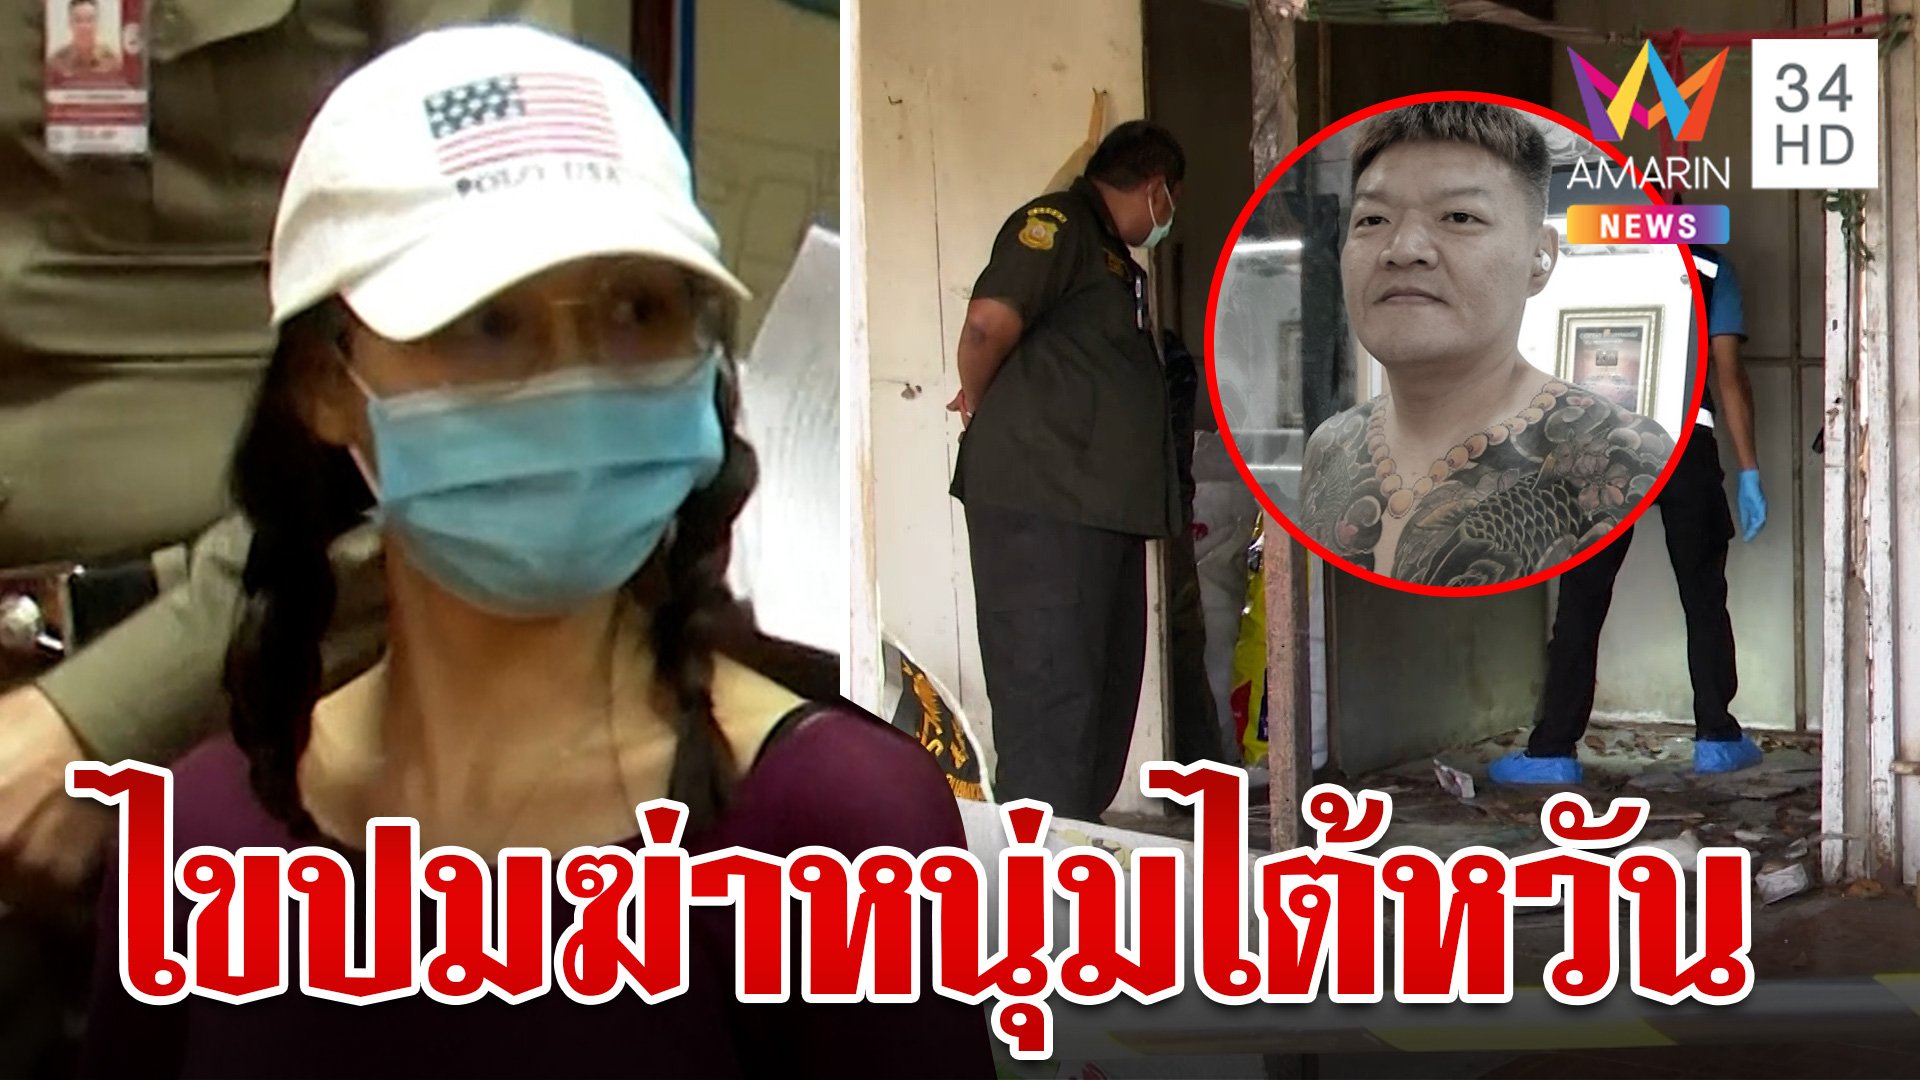 รวบสาวไทยร่วมก๊วนฆ่าหนุ่มไต้หวัน คายหมดเปลือกปมฆ่าขัดแย้งธุรกิจมืด | ทุบโต๊ะข่าว | 27 ก.พ. 67 | AMARIN TVHD34